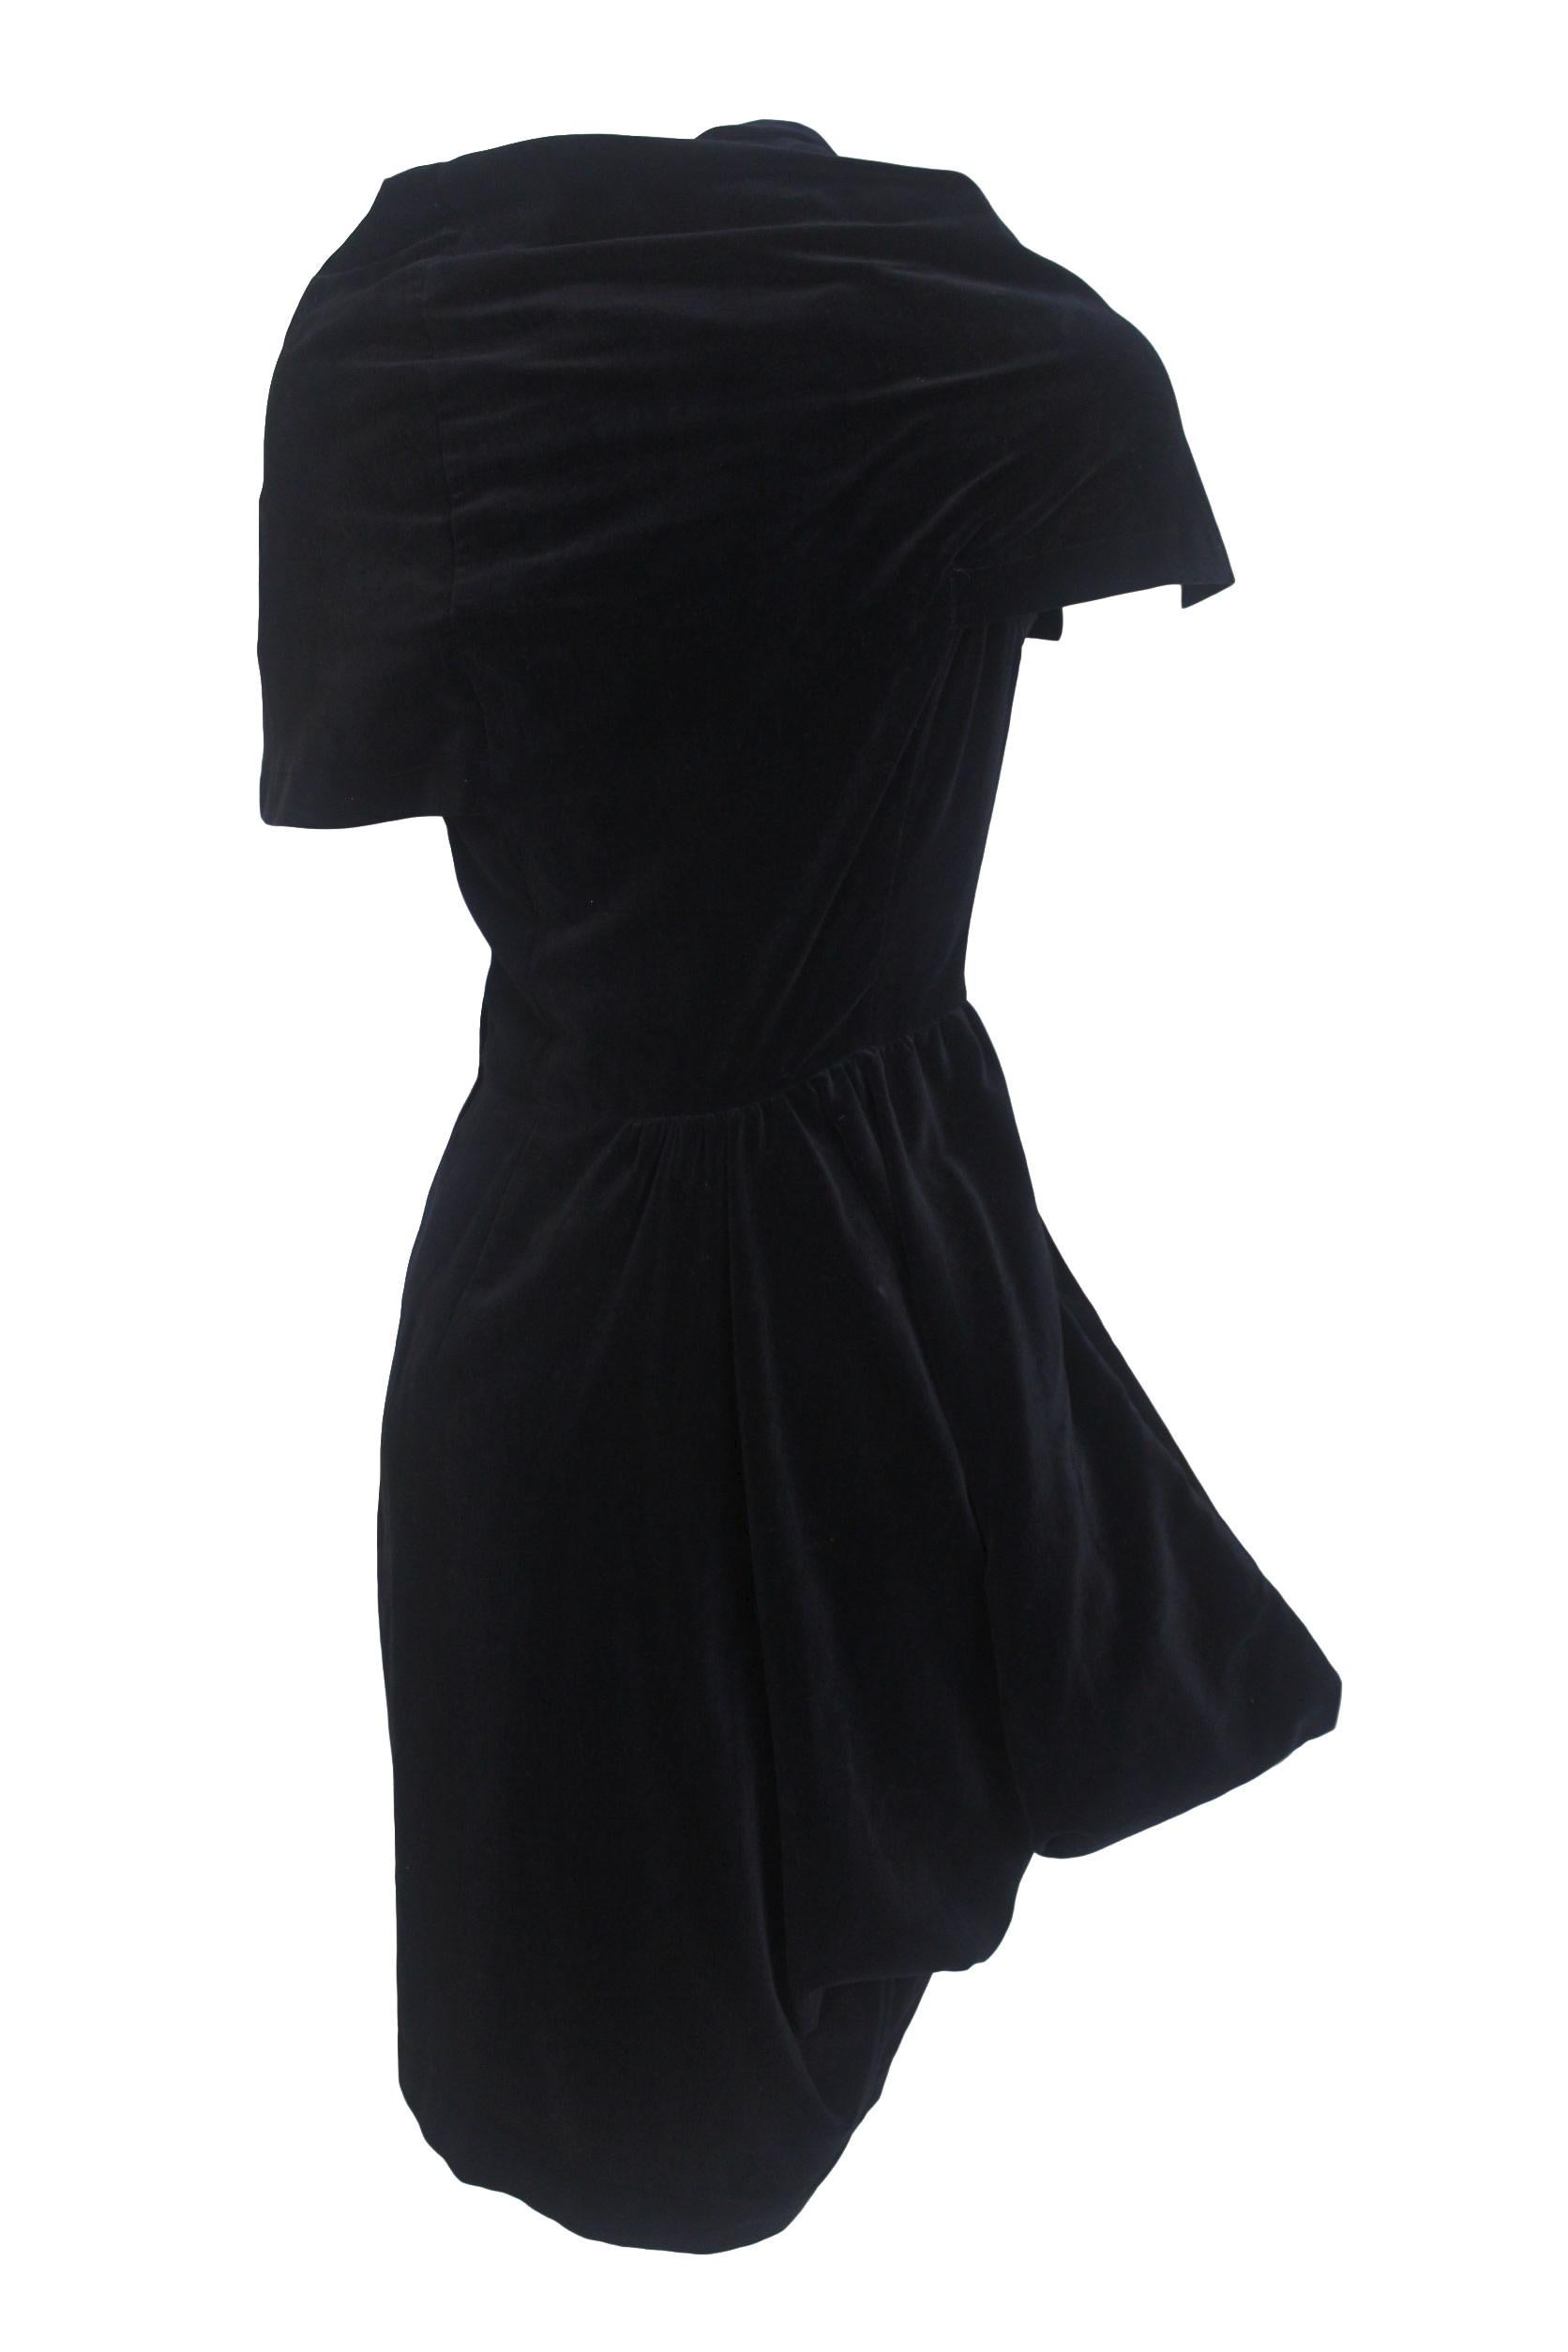 Comme des Garcons Noir Vintage  SS 1989 Dior Esque Cotton Velvet Dress  In Good Condition For Sale In Bath, GB